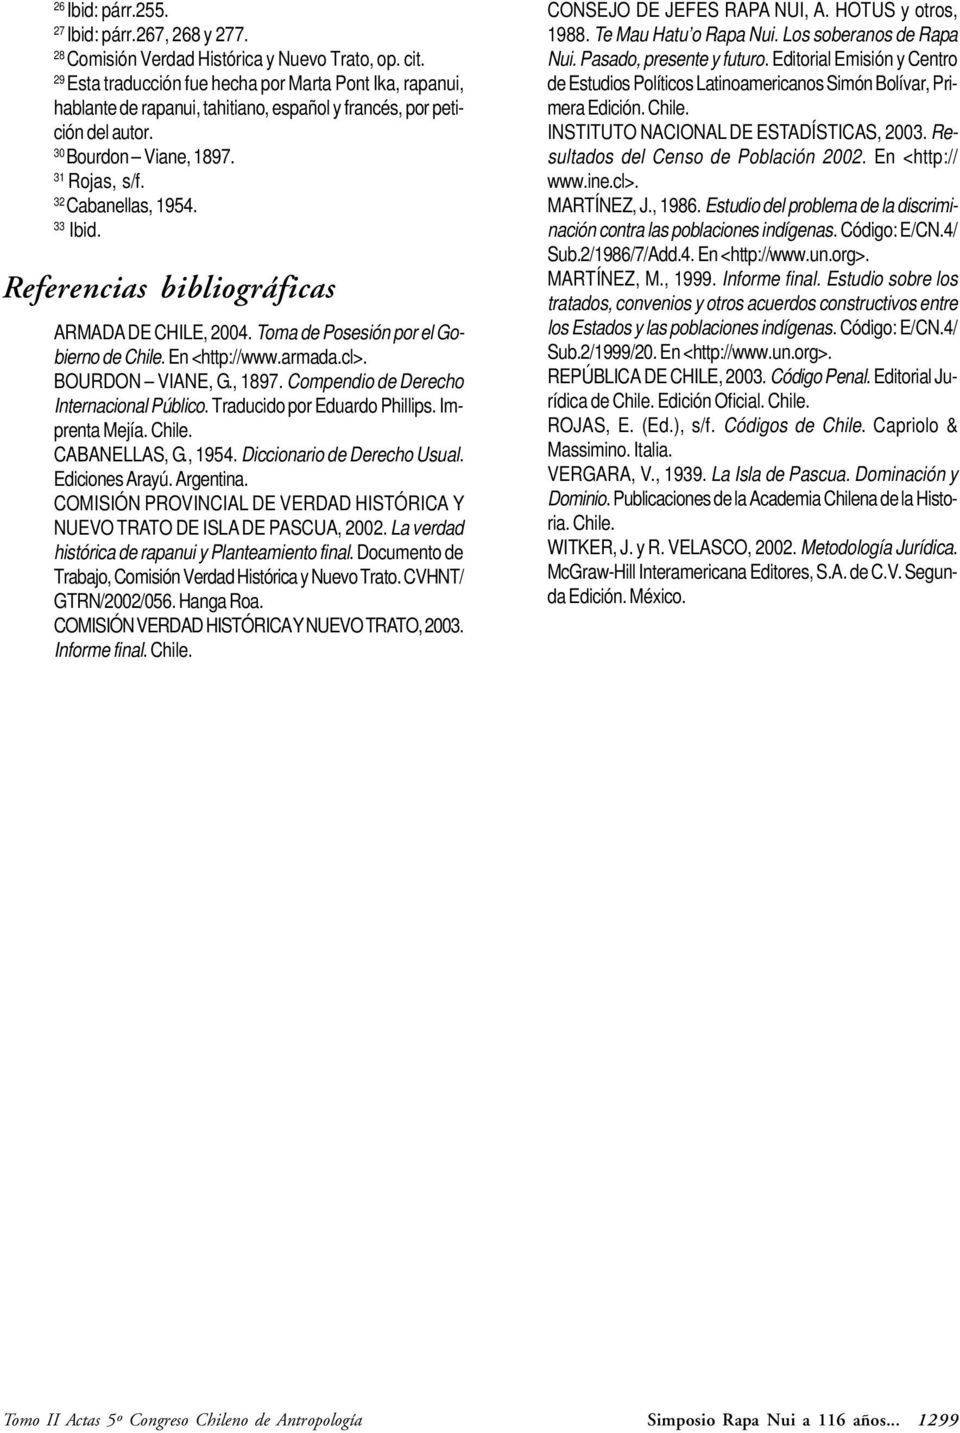 33 Ibid. Referencias bibliográficas ARMADA DE CHILE, 2004. Toma de Posesión por el Gobierno de Chile. En <http://www.armada.cl>. BOURDON VIANE, G., 1897. Compendio de Derecho Internacional Público.